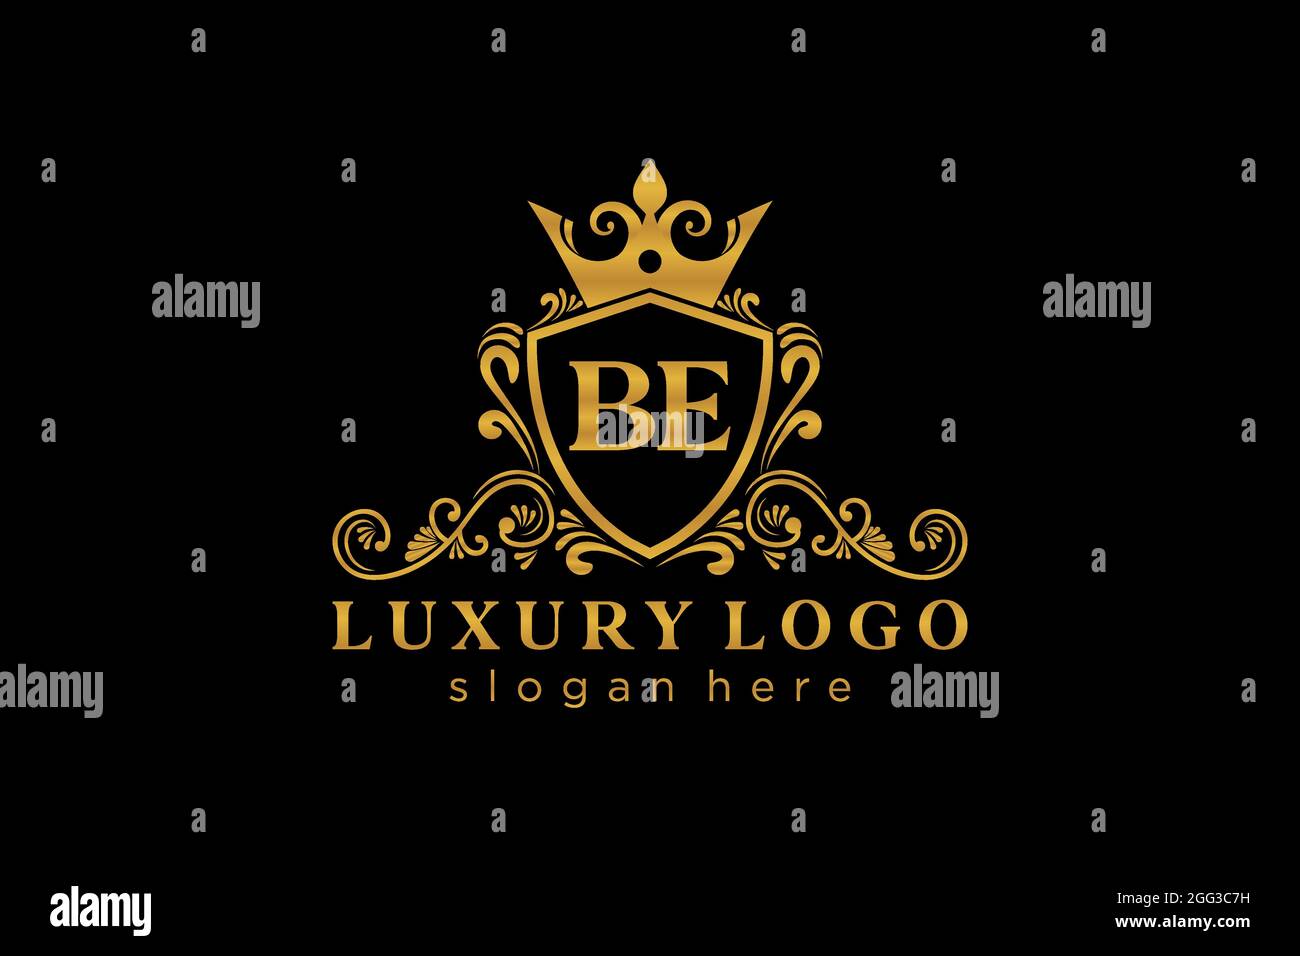 BE Letter Royal Luxury Logo Vorlage in Vektorgrafik für Restaurant, Royalty, Boutique, Cafe, Hotel, Heraldisch, Schmuck, Mode und andere Vektor illustrr Stock Vektor